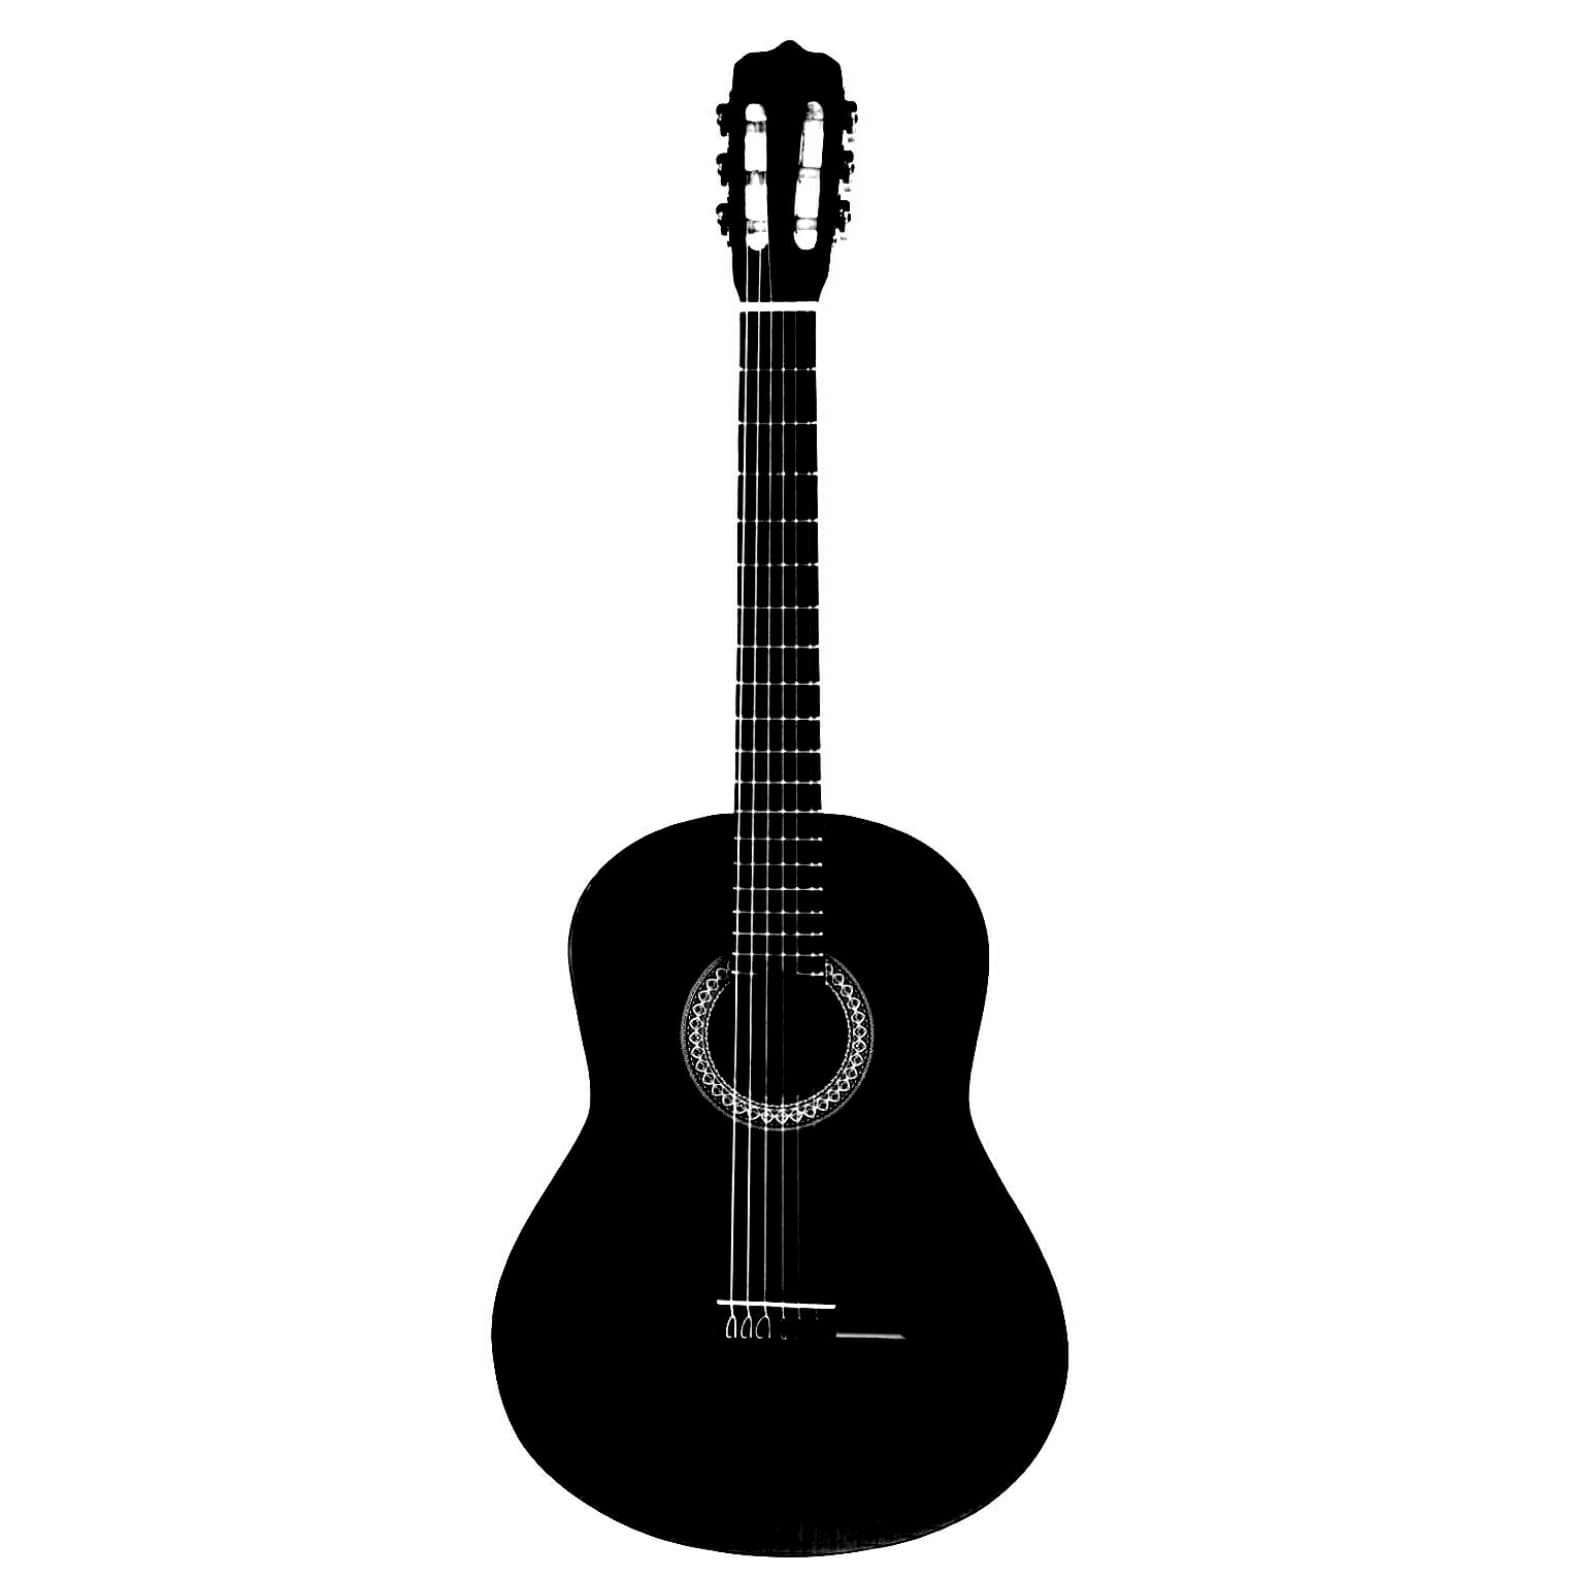 خرید گیتار ارزان قیمت + 10 مدل با کیفیت